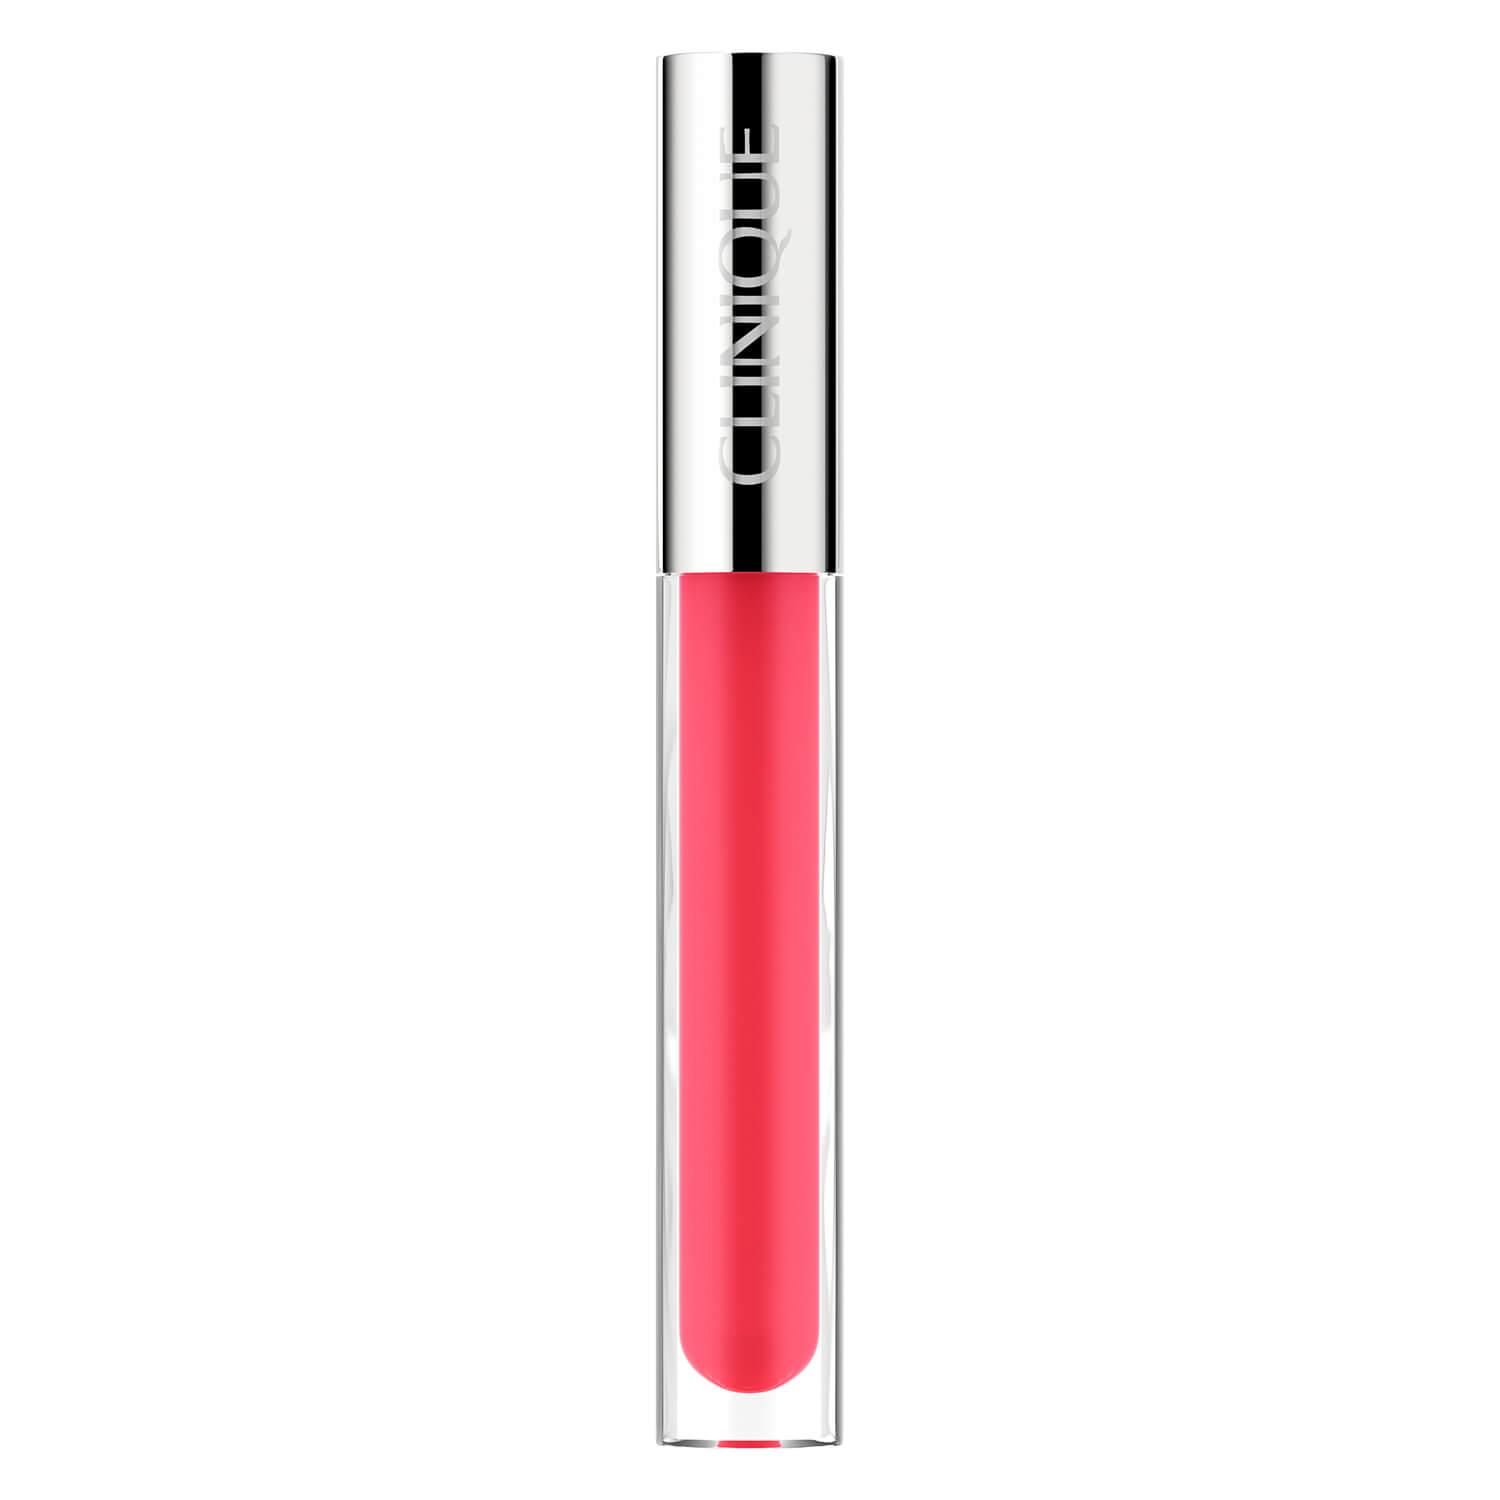 Clinique Lips - Pop Plush Creamy Lip Gloss 08 Strawberry Pop